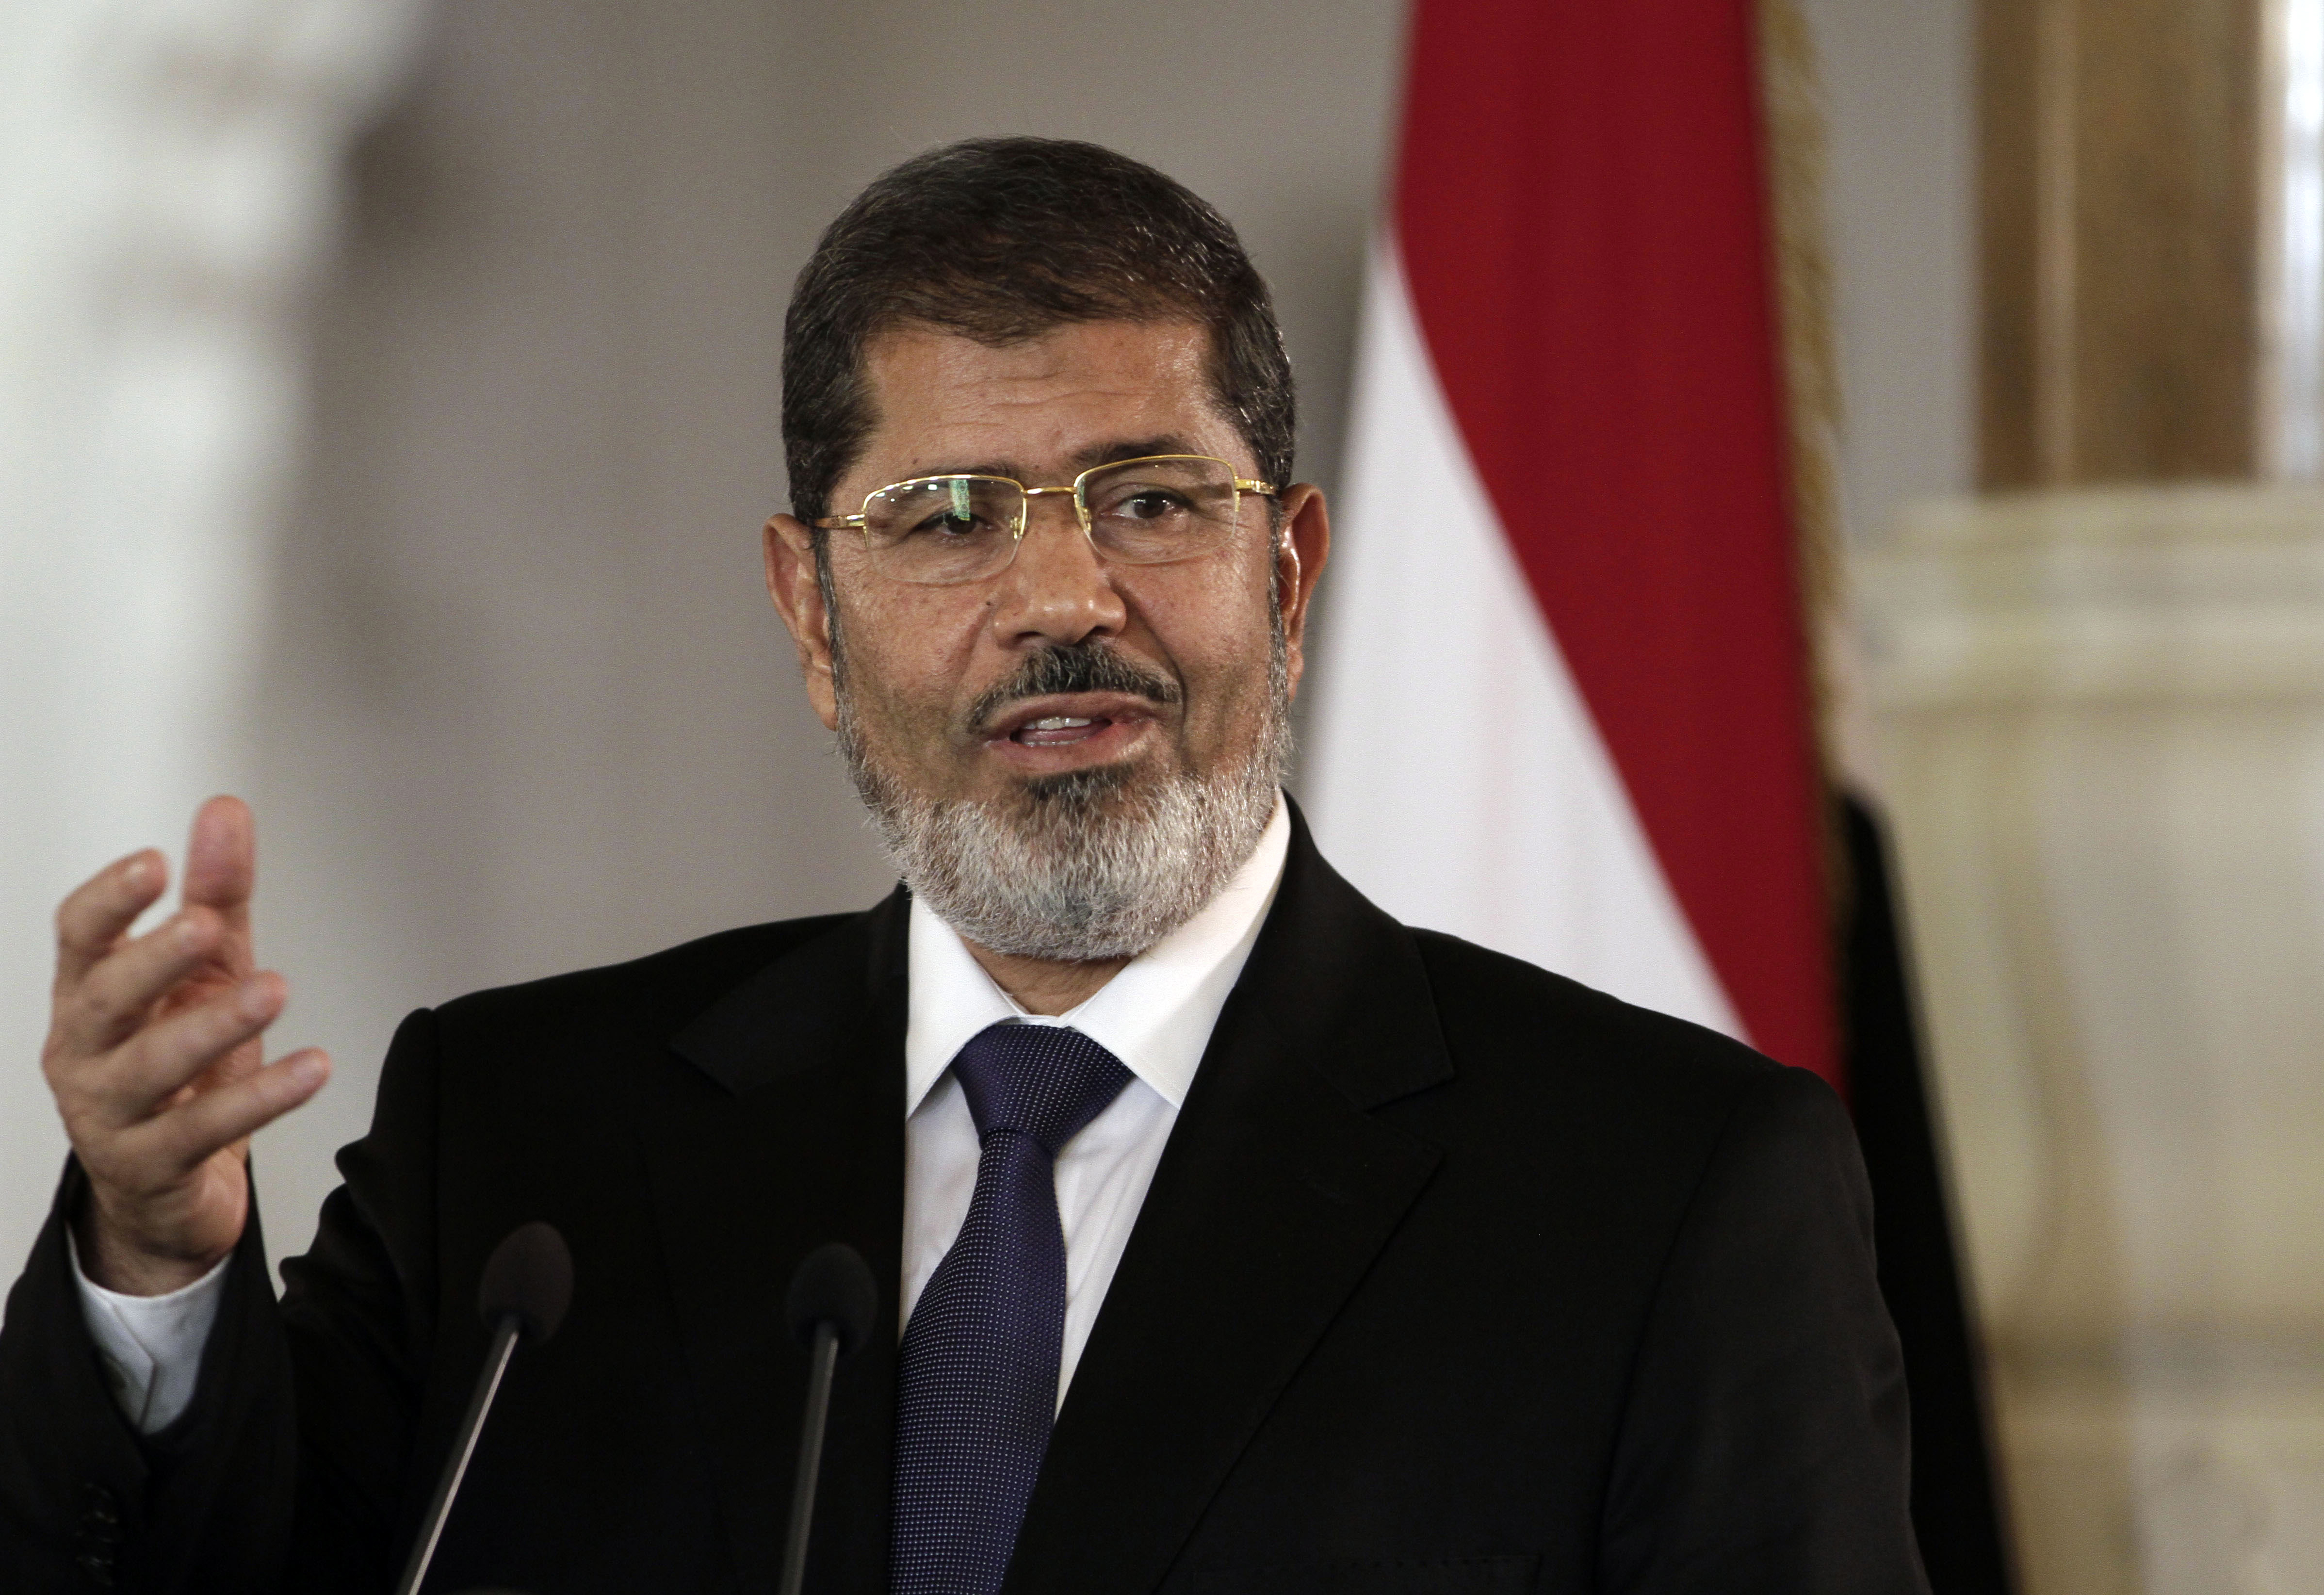 Ξεκινά η δεύτερη δίκη του ανατραπέντος προέδρου Μόρσι